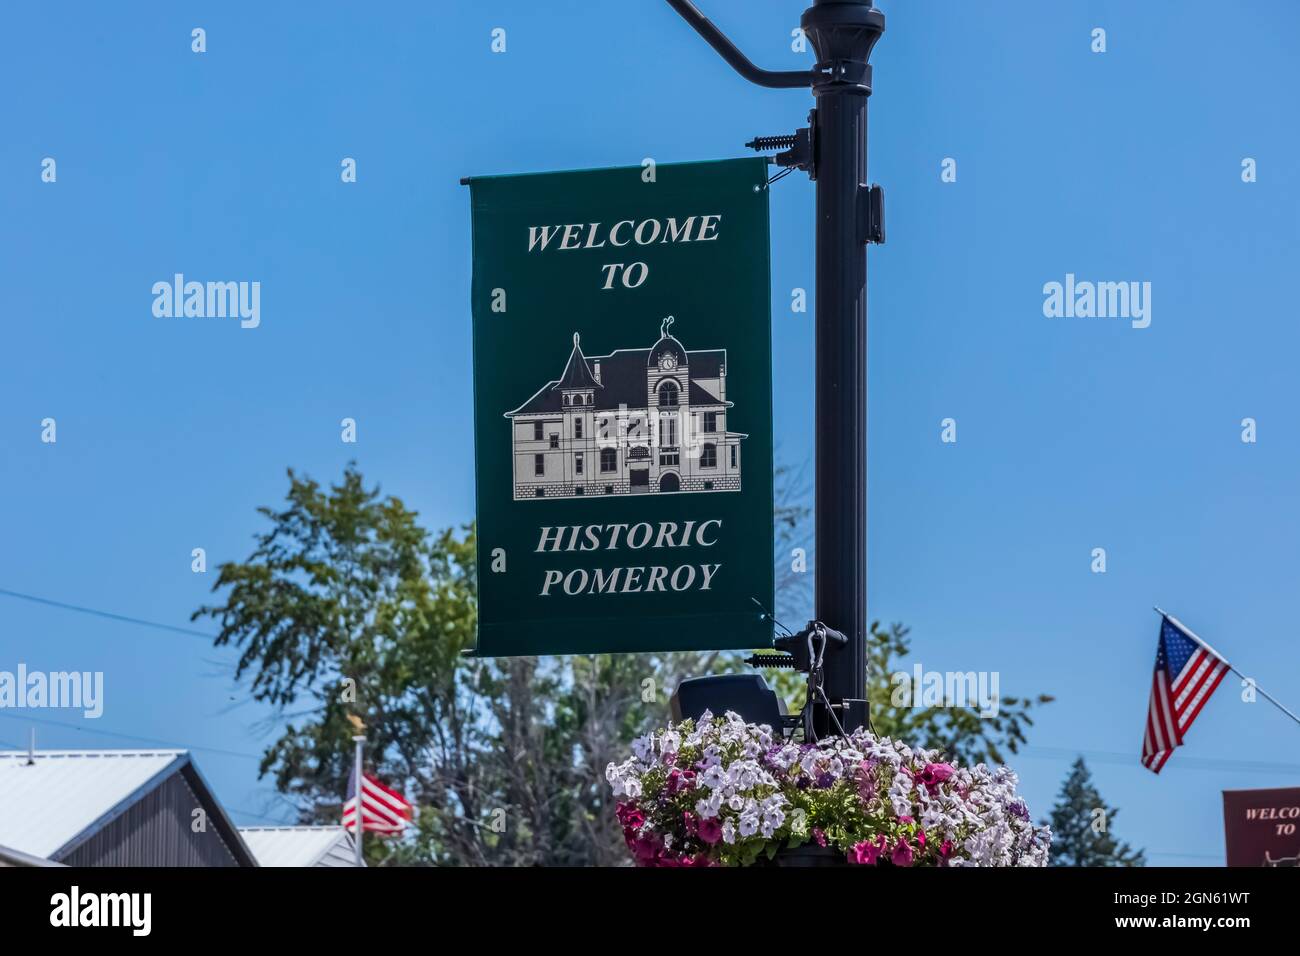 Bannière accueillant les visiteurs à Pomeroy, État de Washington, États-Unis Banque D'Images